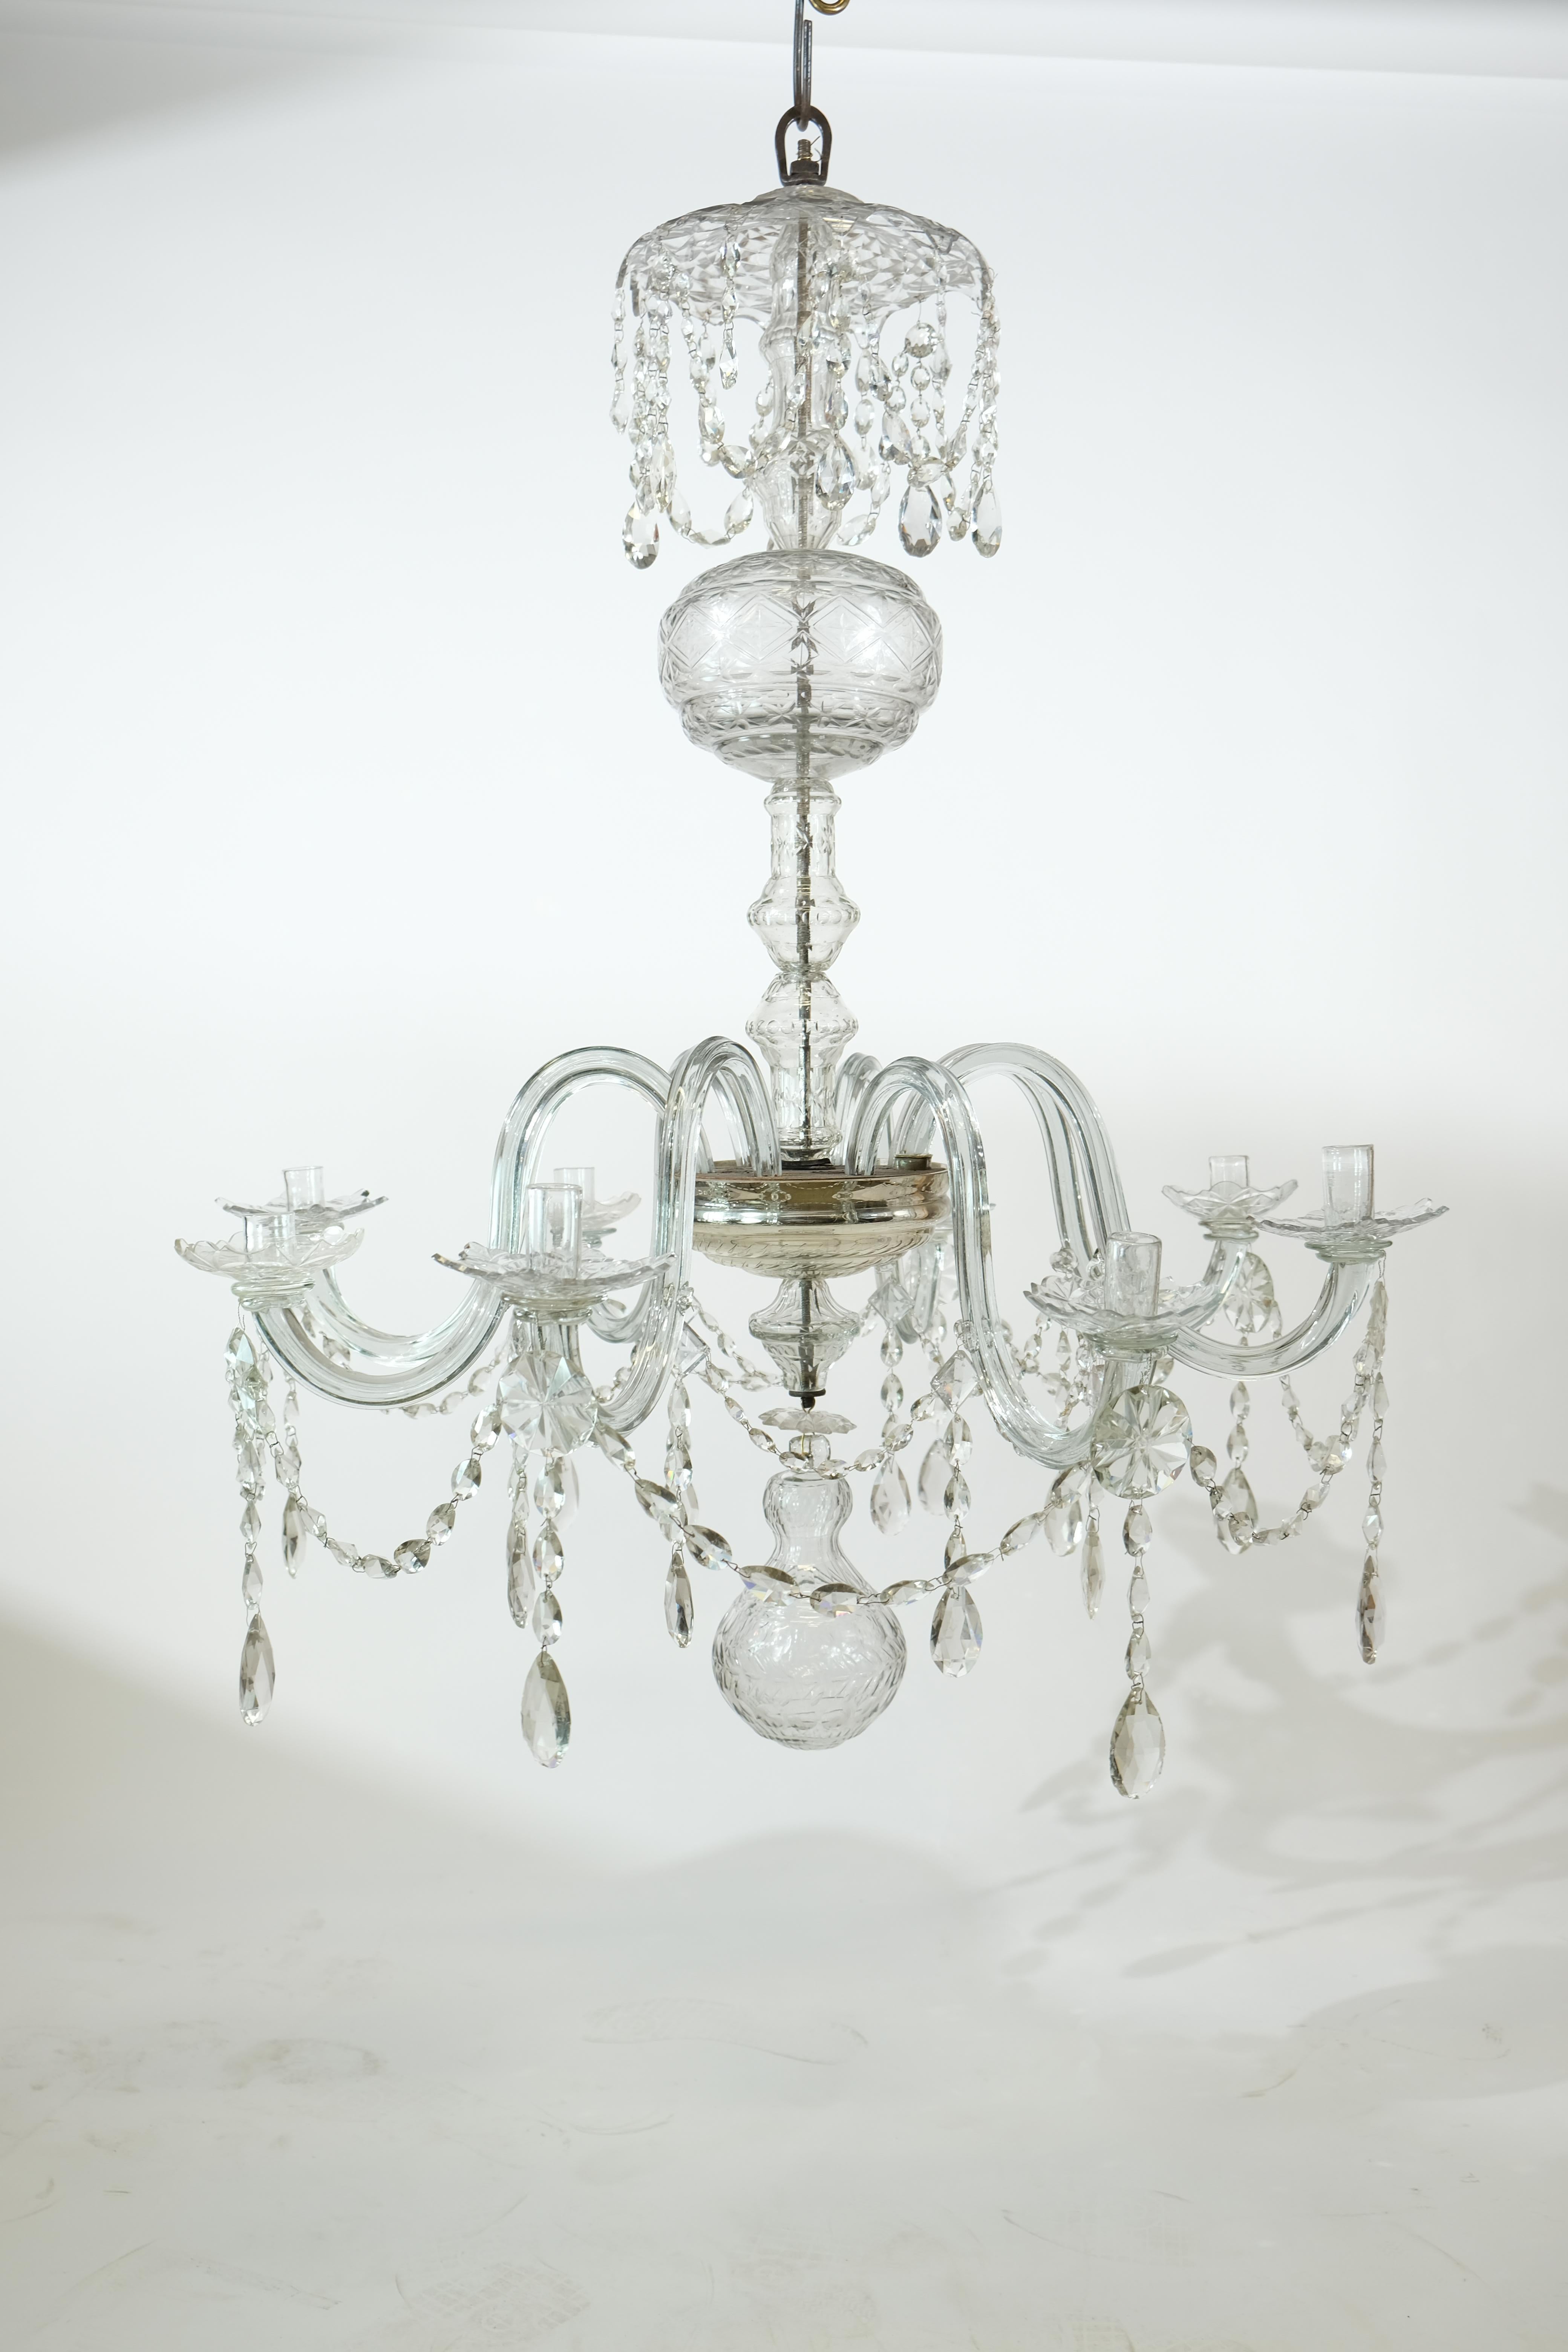 Un grand lustre de haute qualité du 18ème siècle. Très probablement l'anglais. Il comporte huit bras de verre qui accueillent les chandeliers. La partie centrale est constituée de plusieurs ampoules et bouteilles en verre taillé. La qualité du